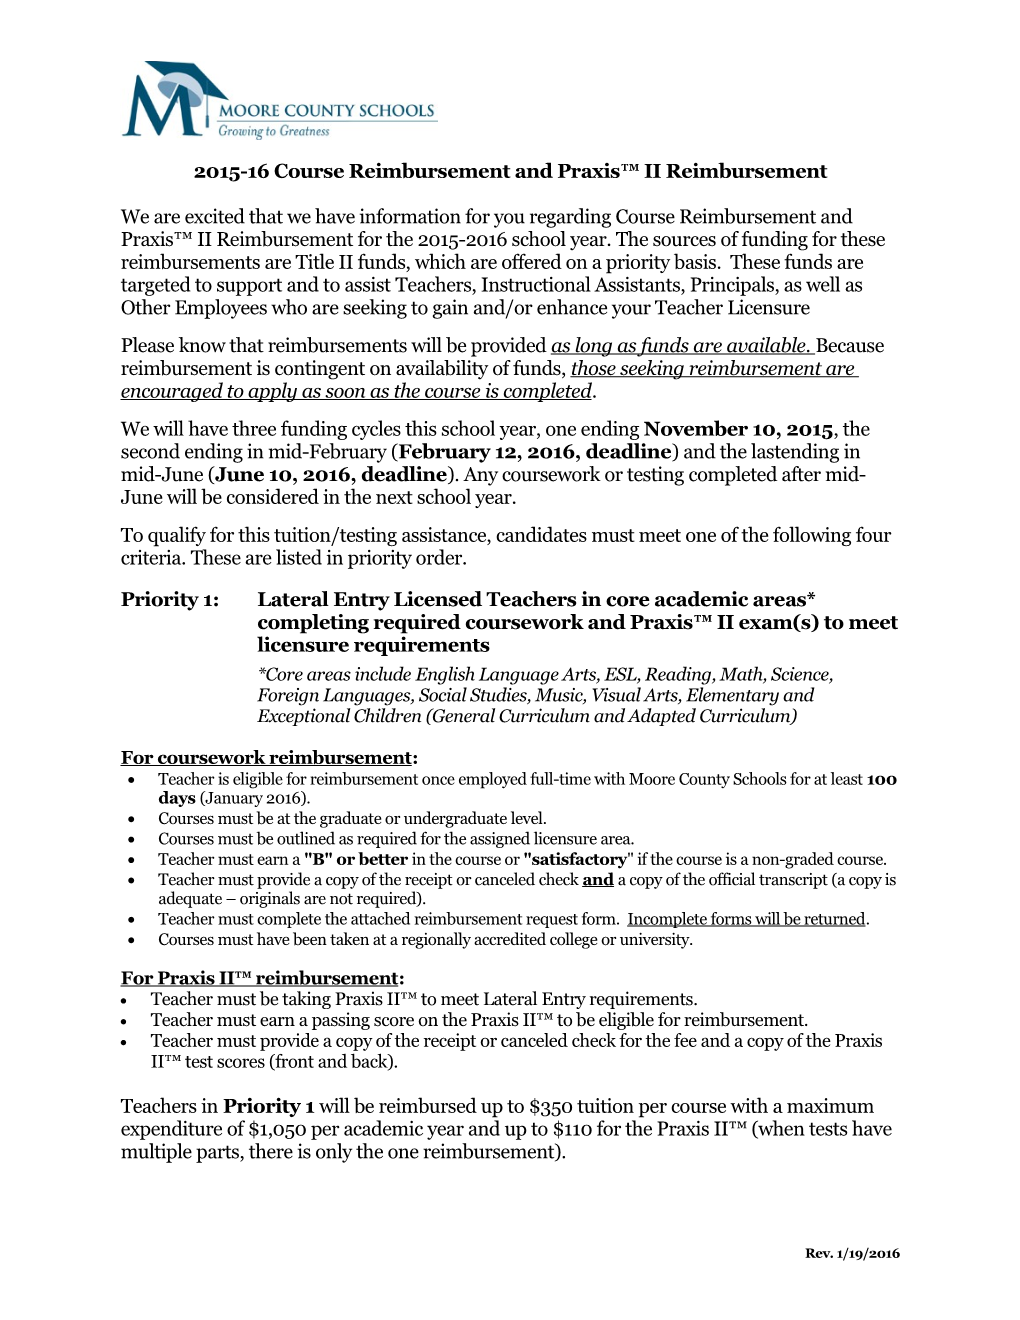 2015-16 Course Reimbursement and Praxis II Reimbursement